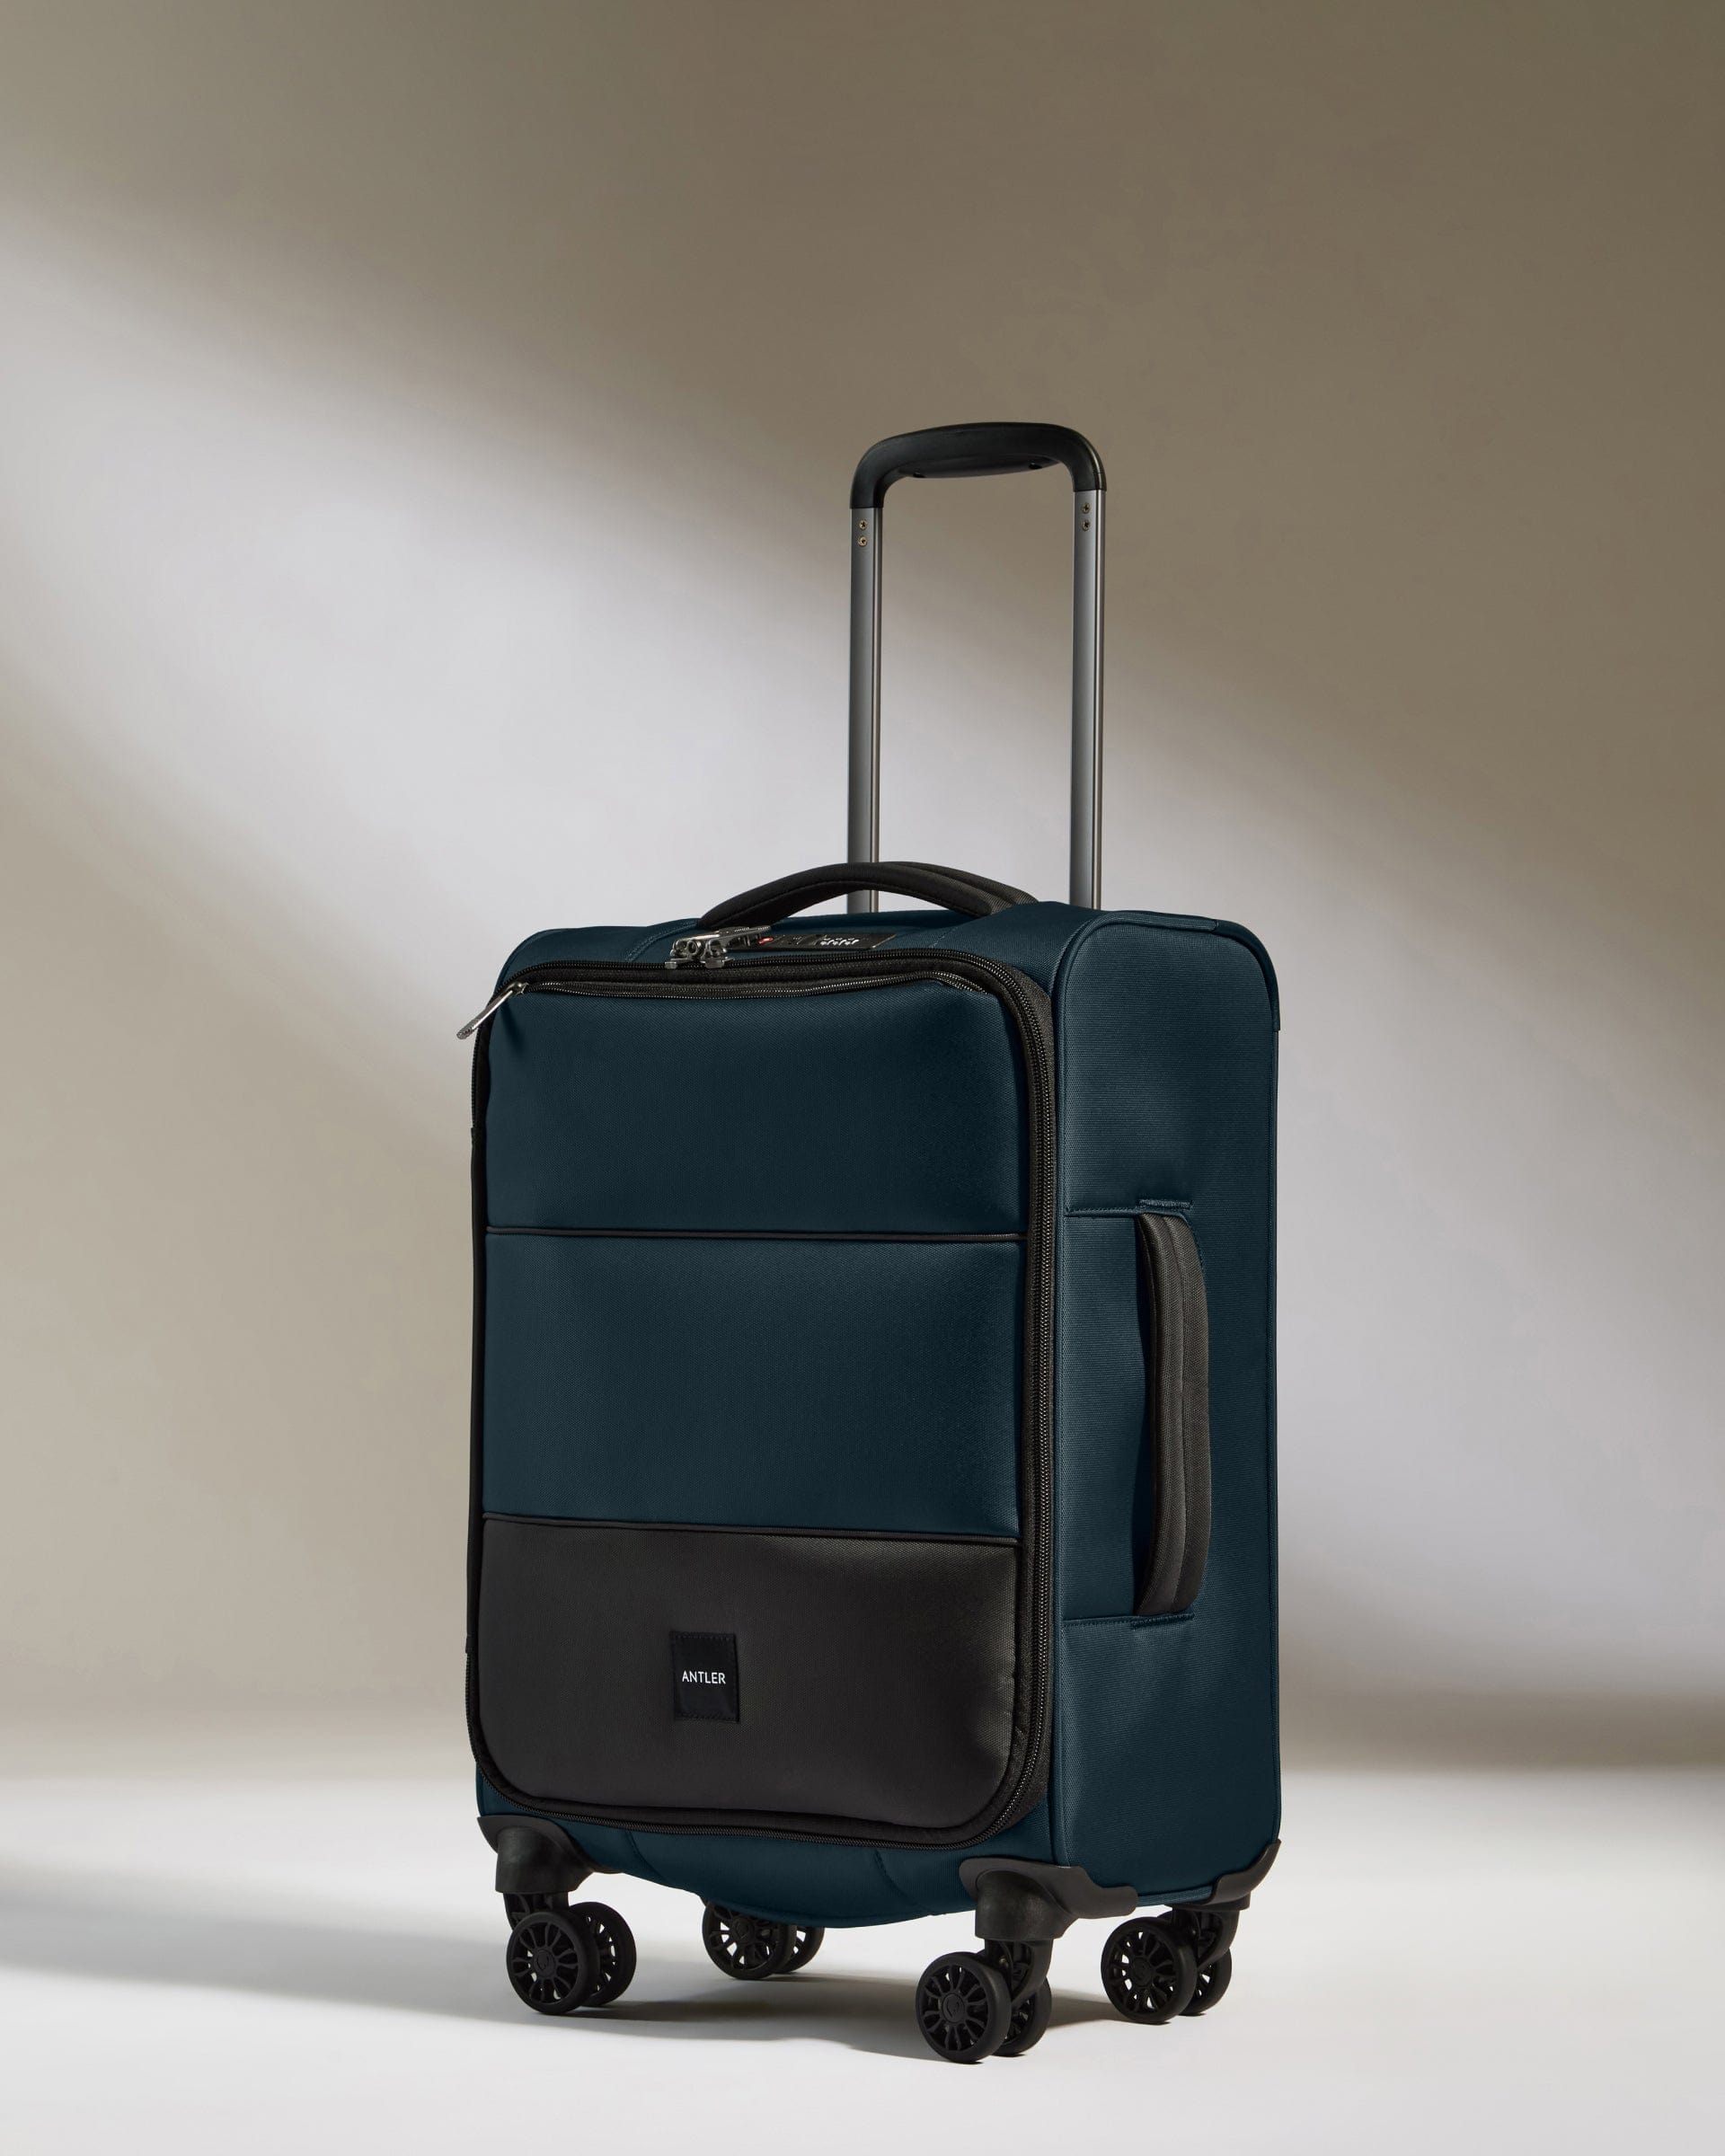 View Antler Soft Stripe Cabin Suitcase In Indigo Size 20cm x 55cm x 35cm information